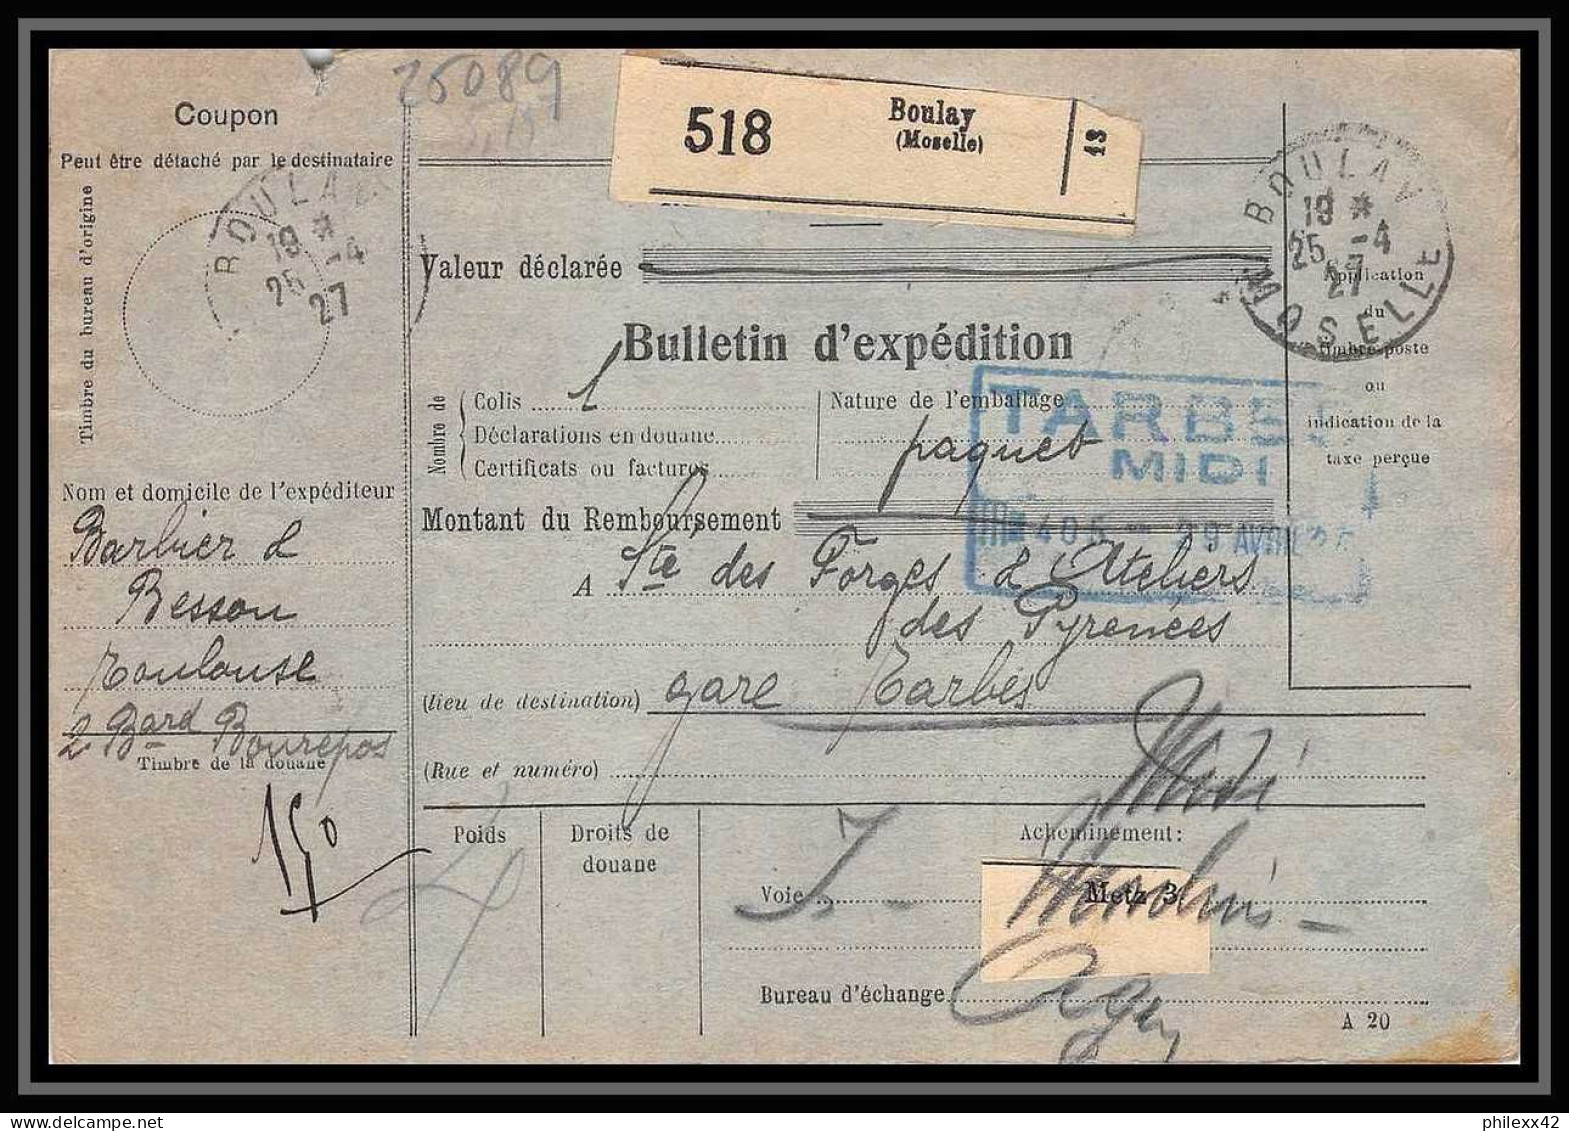 25089 Bulletin D'expédition France Colis Postaux Fiscal Moselle 1927 Boulay Semeuse + Merson 145 Alsace-Lorraine  - Briefe U. Dokumente